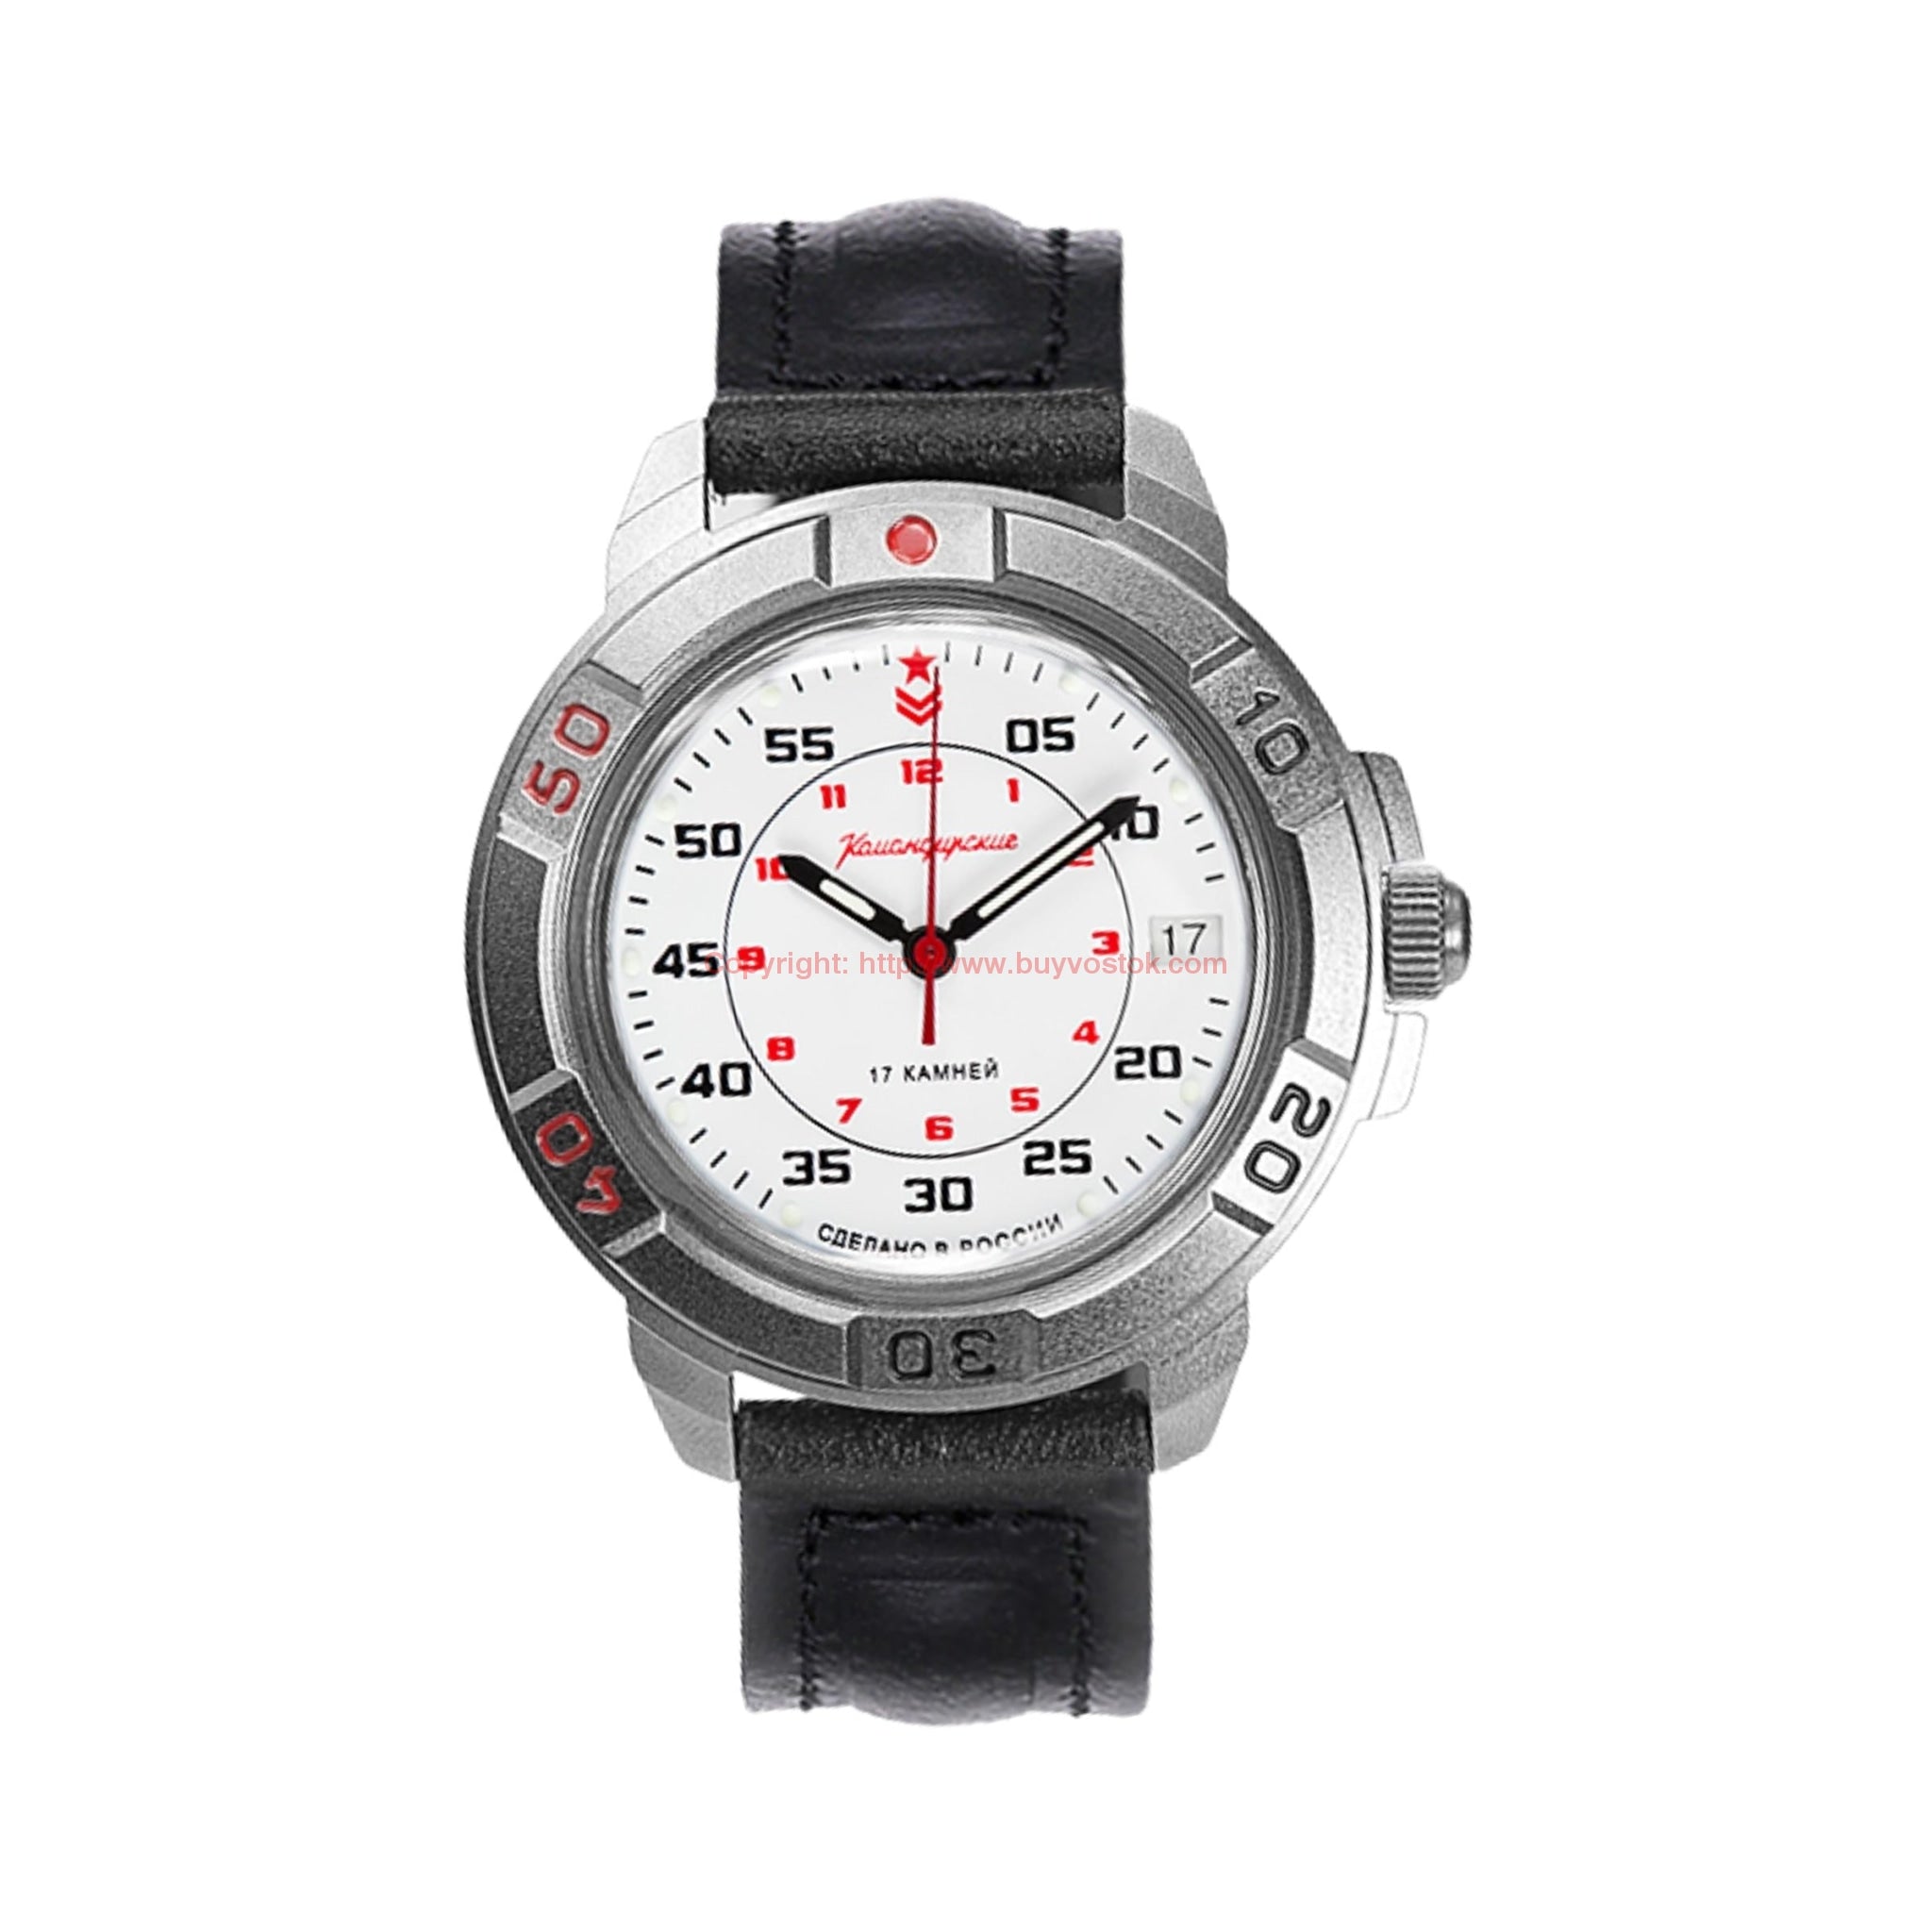 Buy Vintage Watch Komandirskie wostok, Soviet Men's Watch Vostok, Men's  Watch, Military Watch, USSR Online in India - Etsy